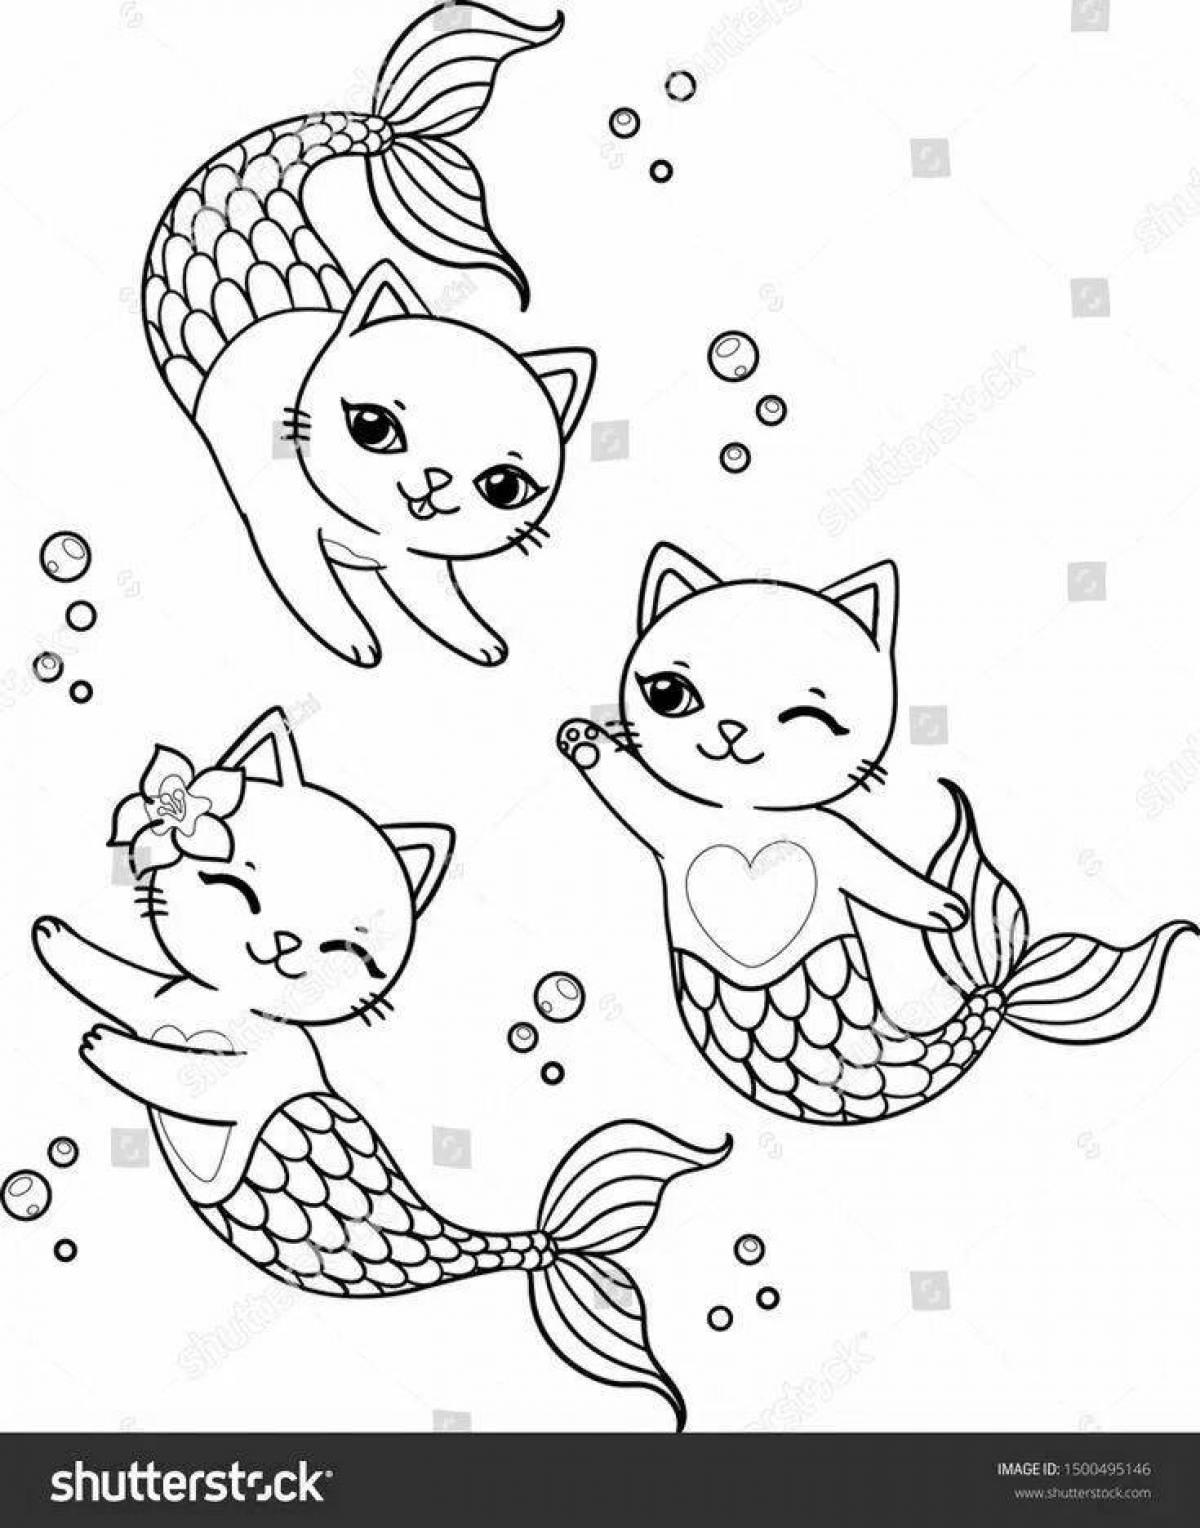 Major coloring cat mermaid